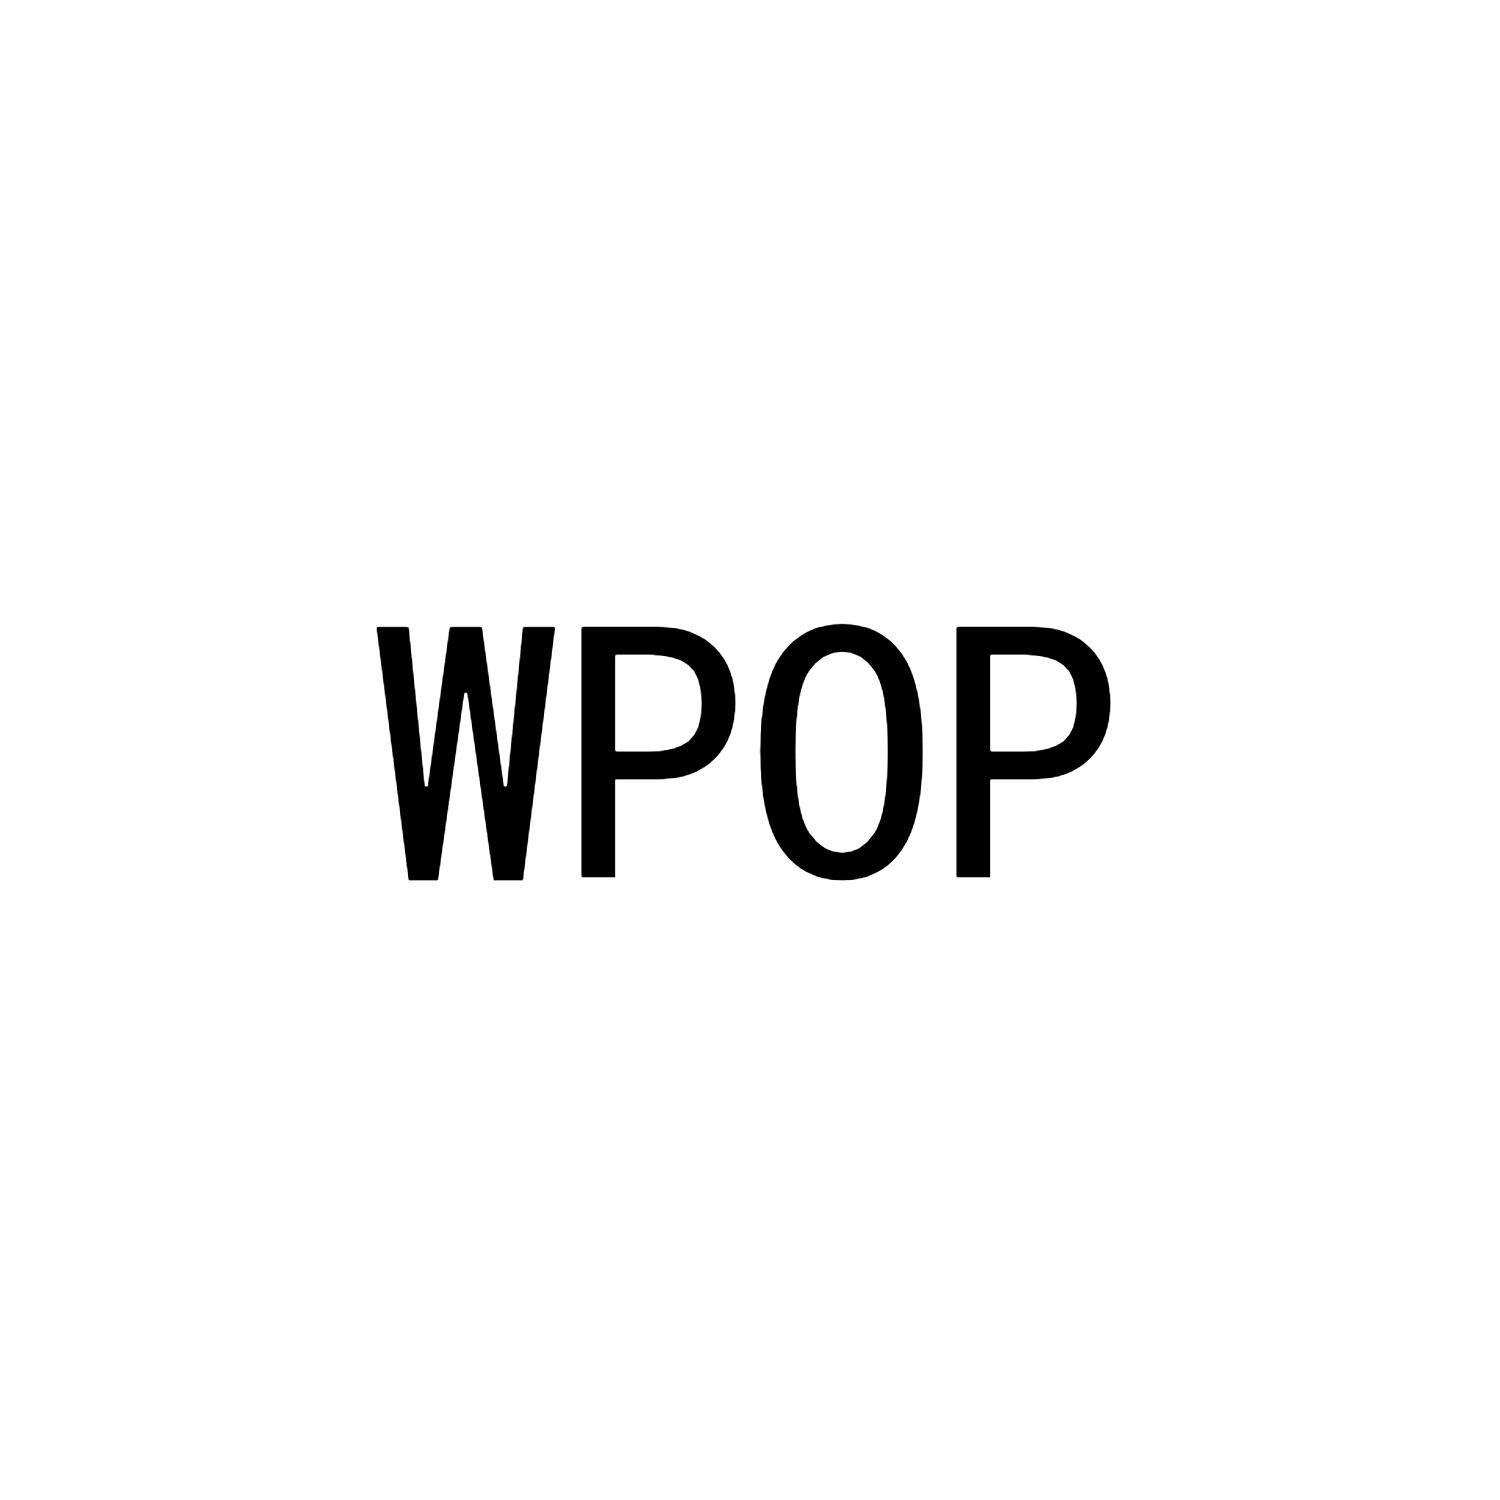 WP0P